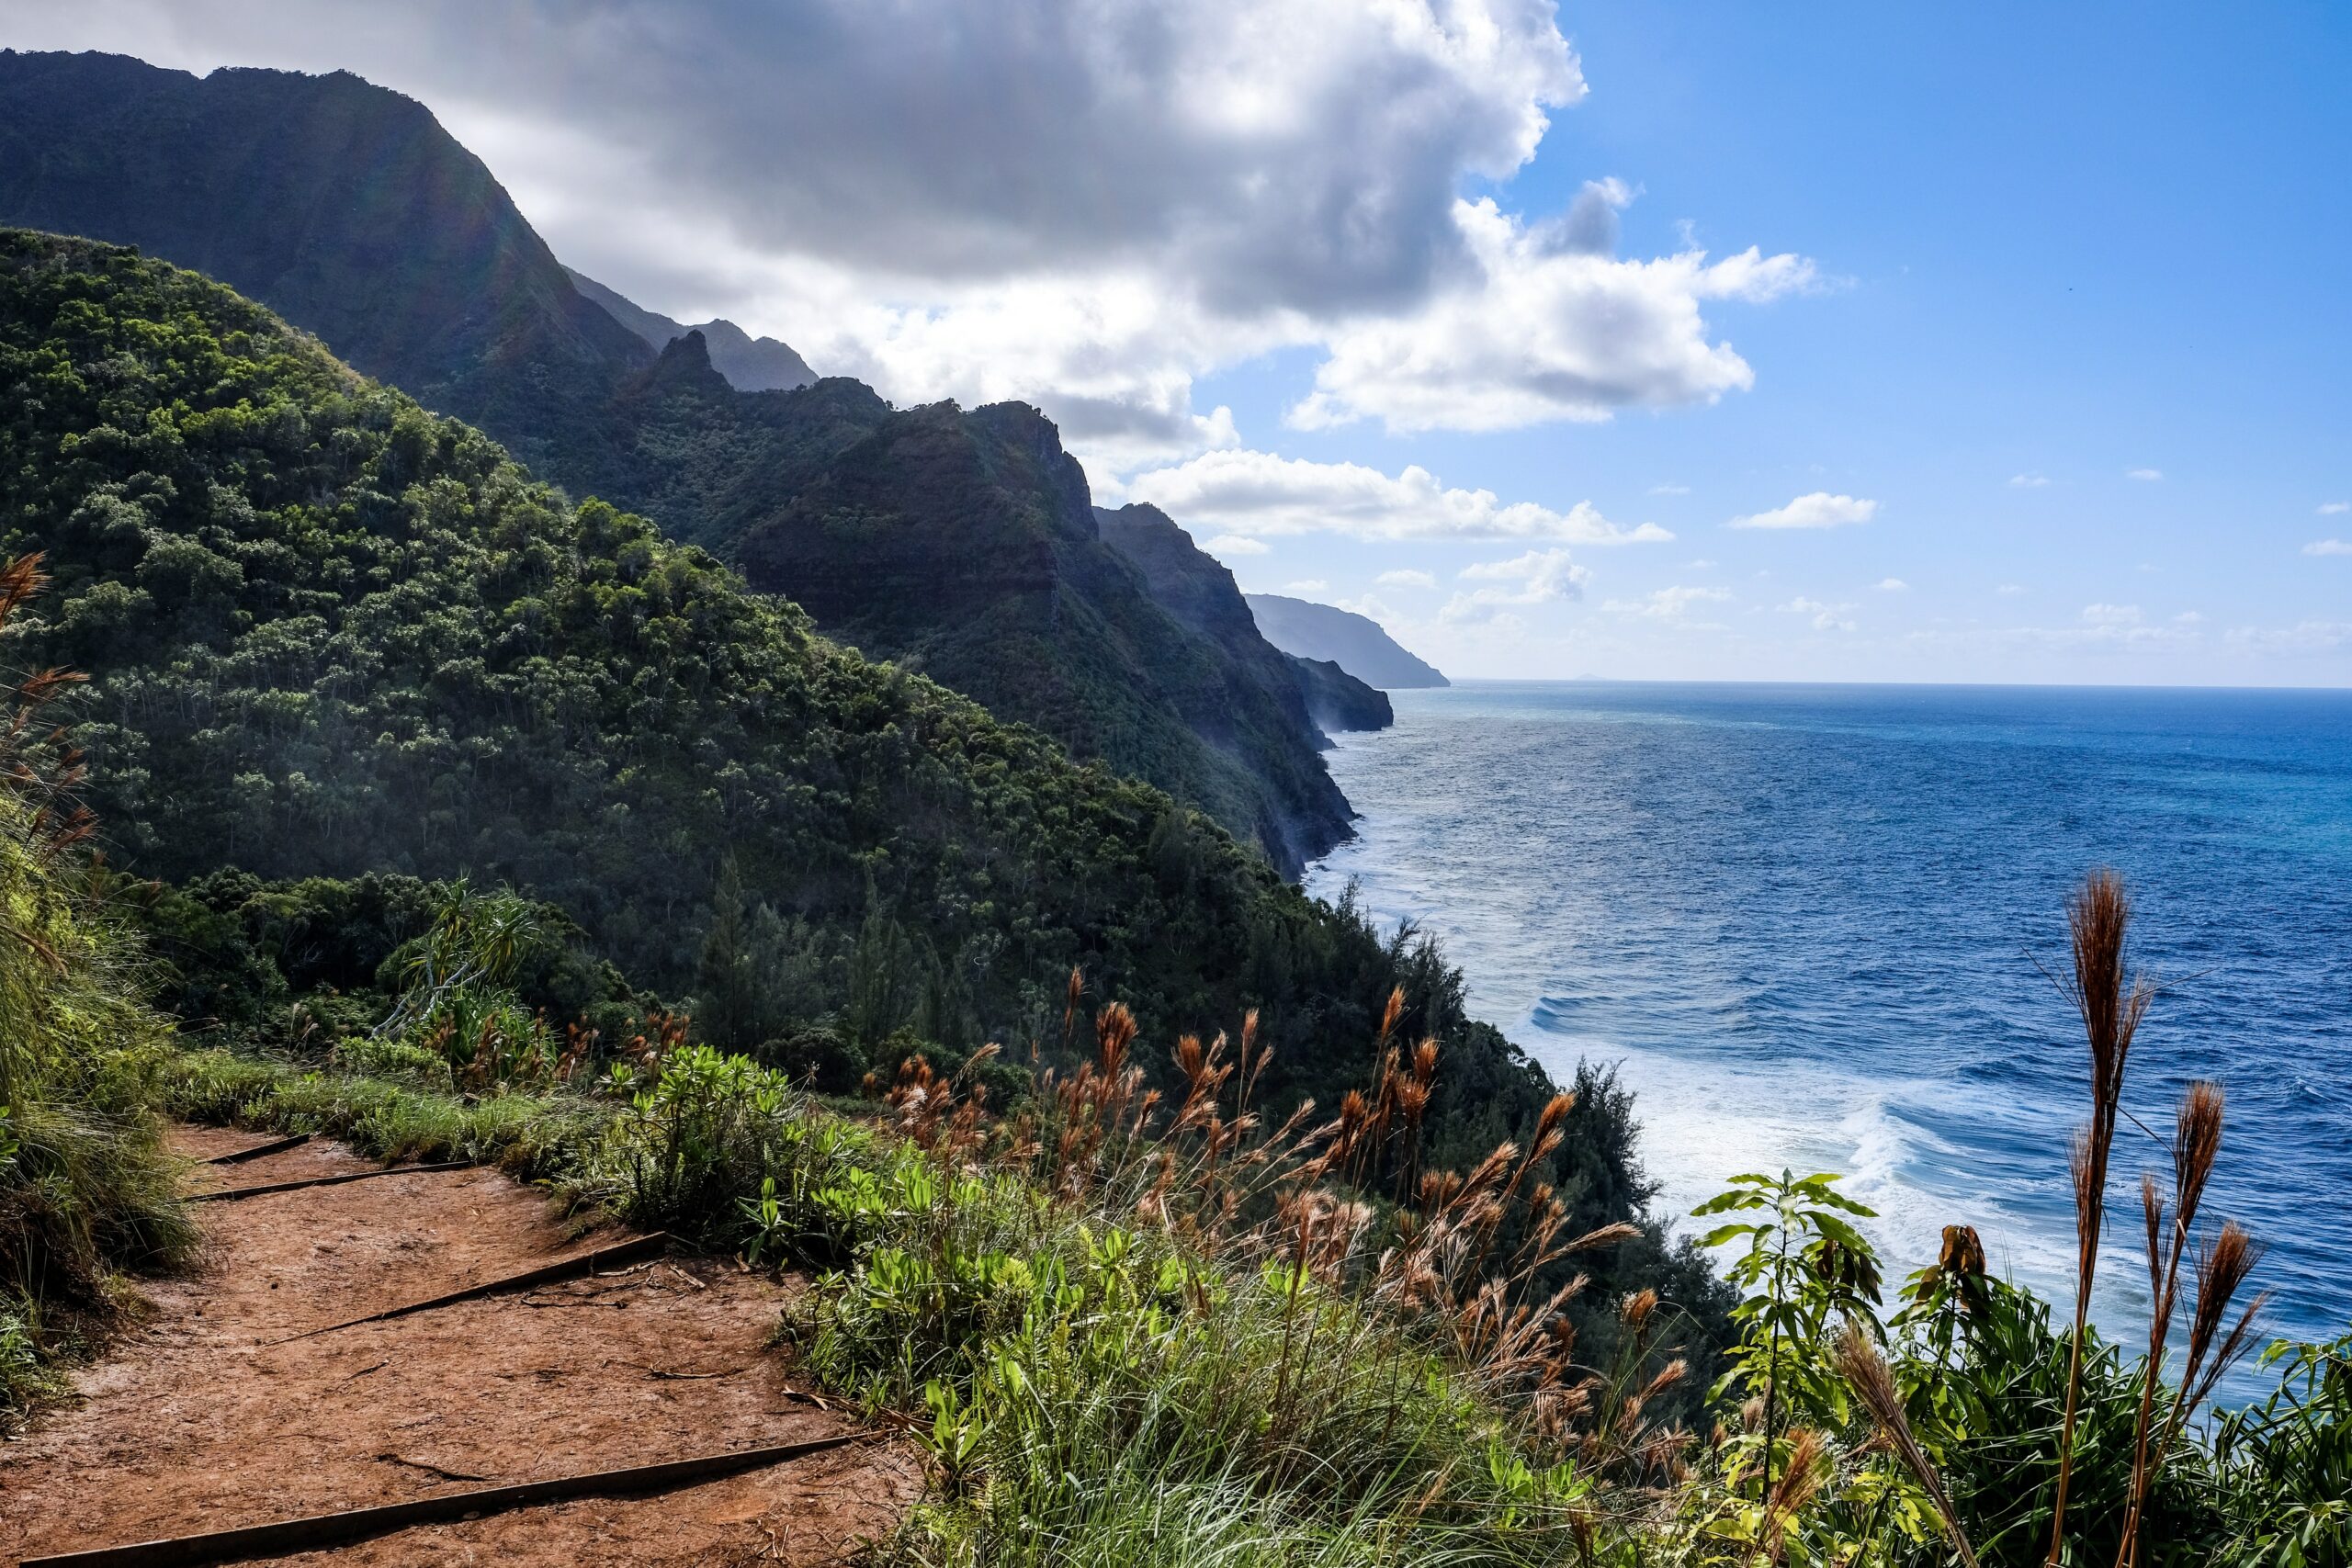 Walking path on the coast of Kauai, Hawaii